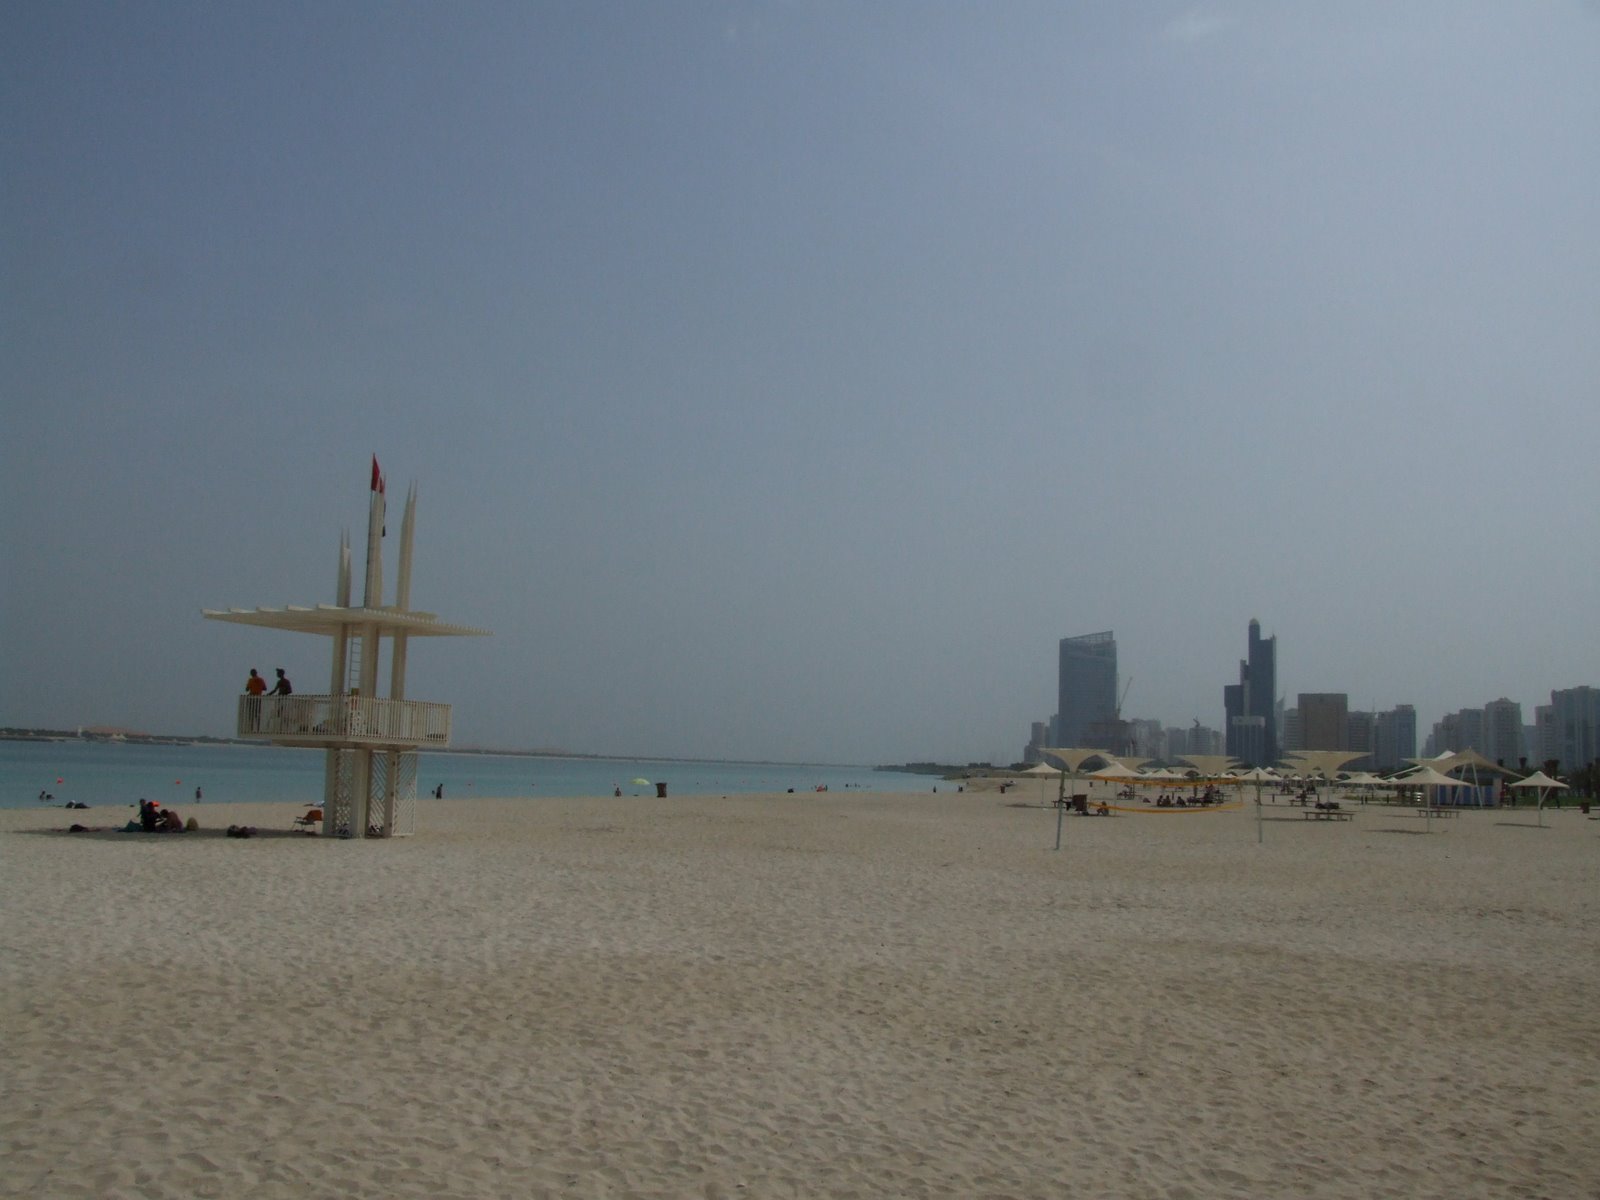 [Abu+Dhabi+Beach+4+DSCF3927.JPG]